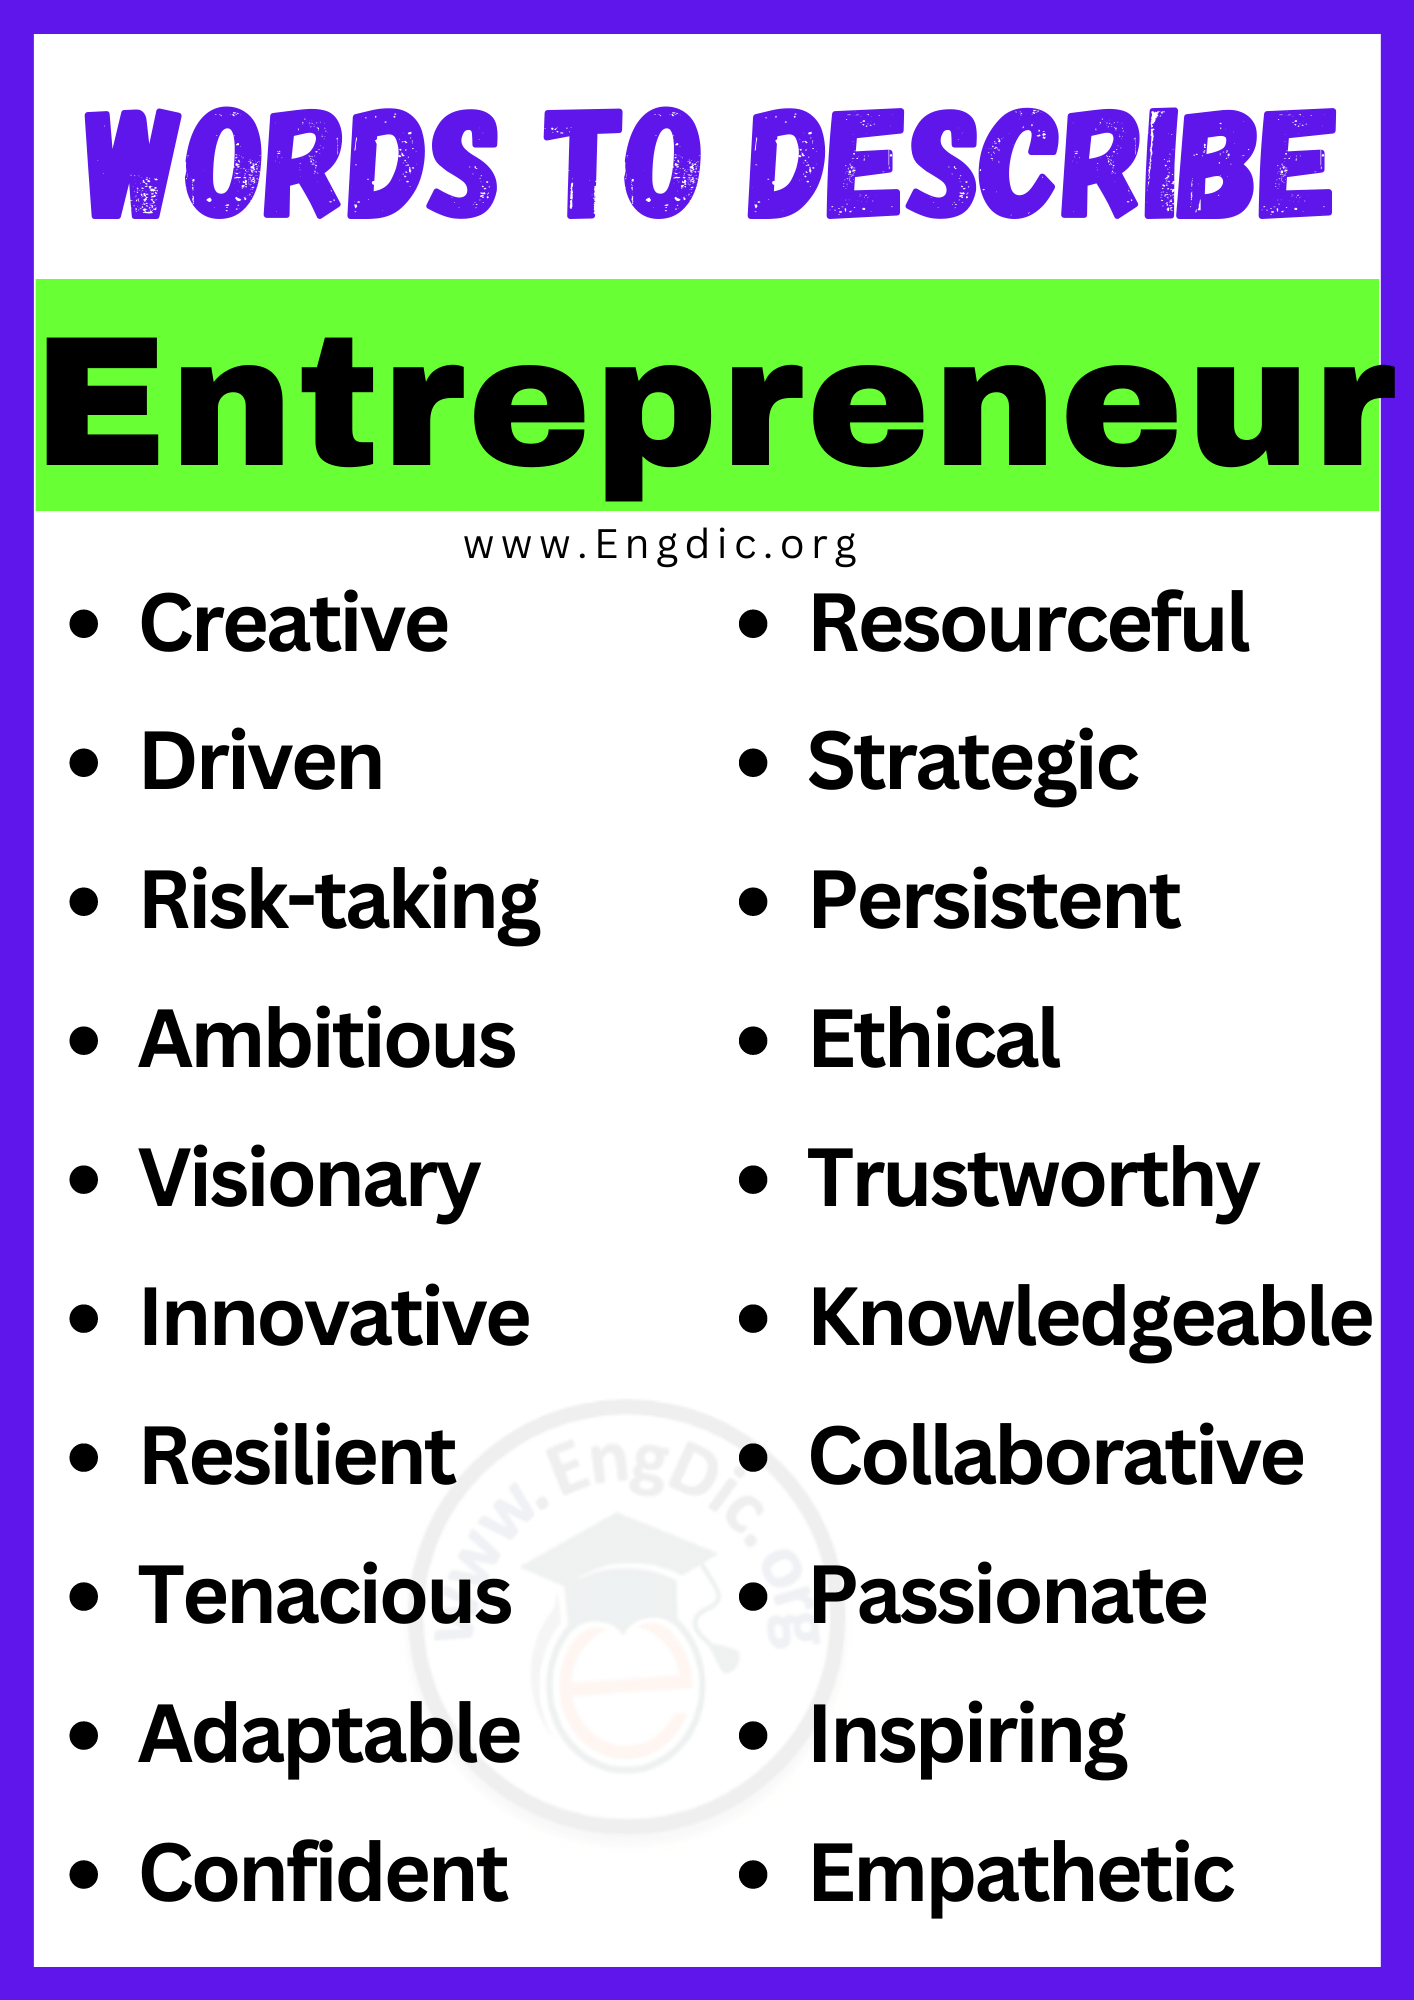 Words to Describe Entrepreneur